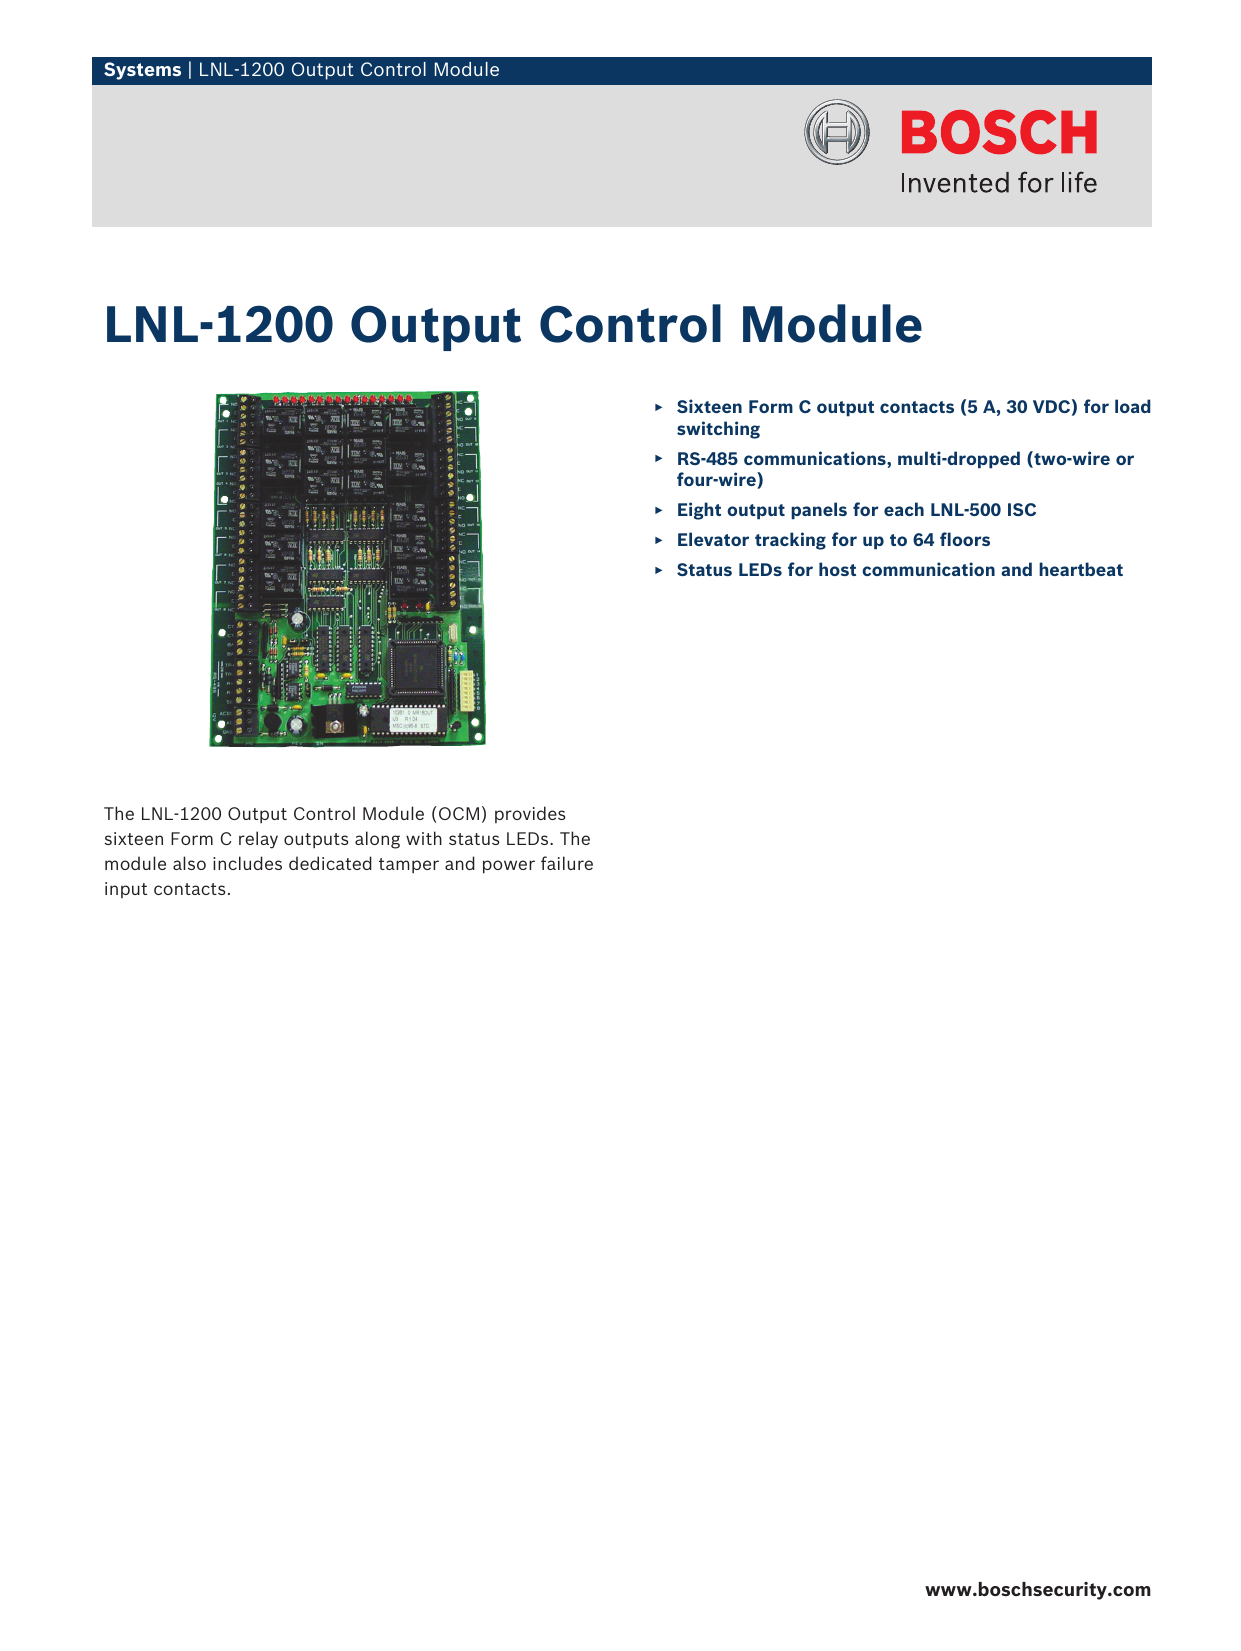 Lenel LNL-1200 Output Control Module 16 Outputs 